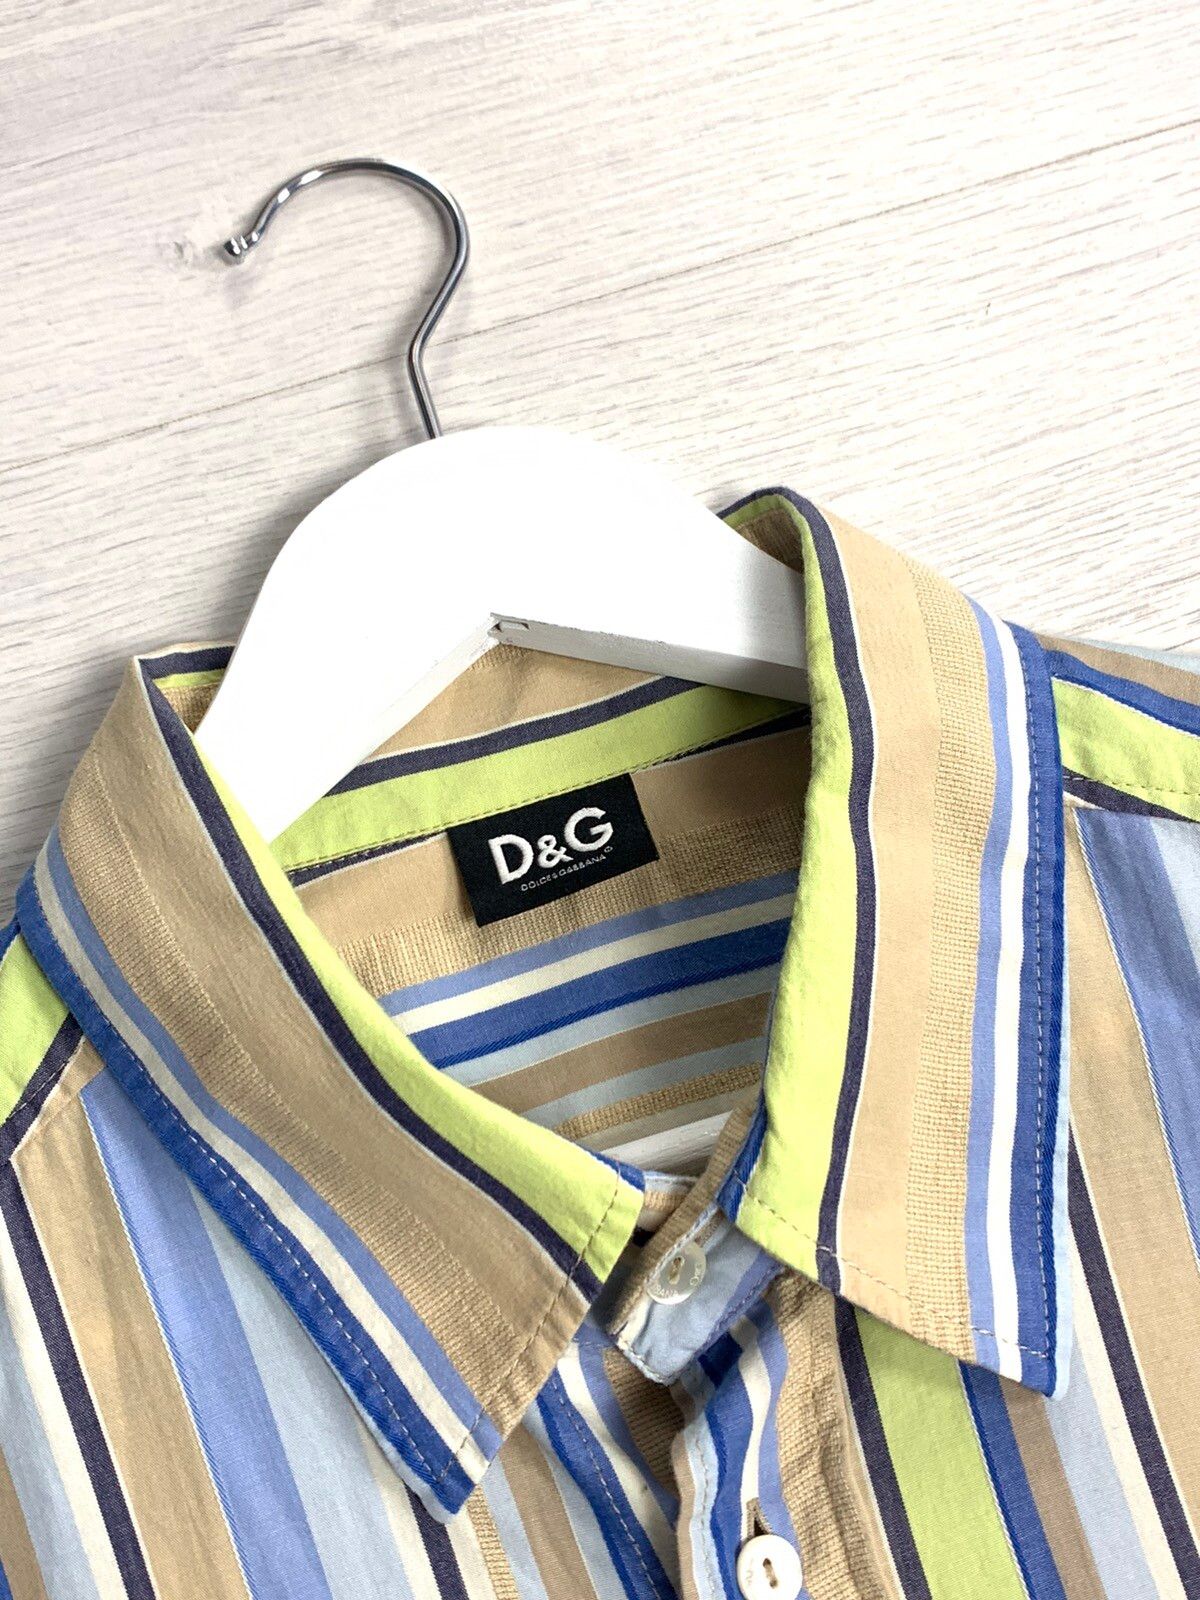 Dolce & Gabbana Dolce Gabbana D&G Buttons Up Short Sleeve Striped Lux Shirt Size XXL / US 16-18 / IT 52-54 - 7 Thumbnail